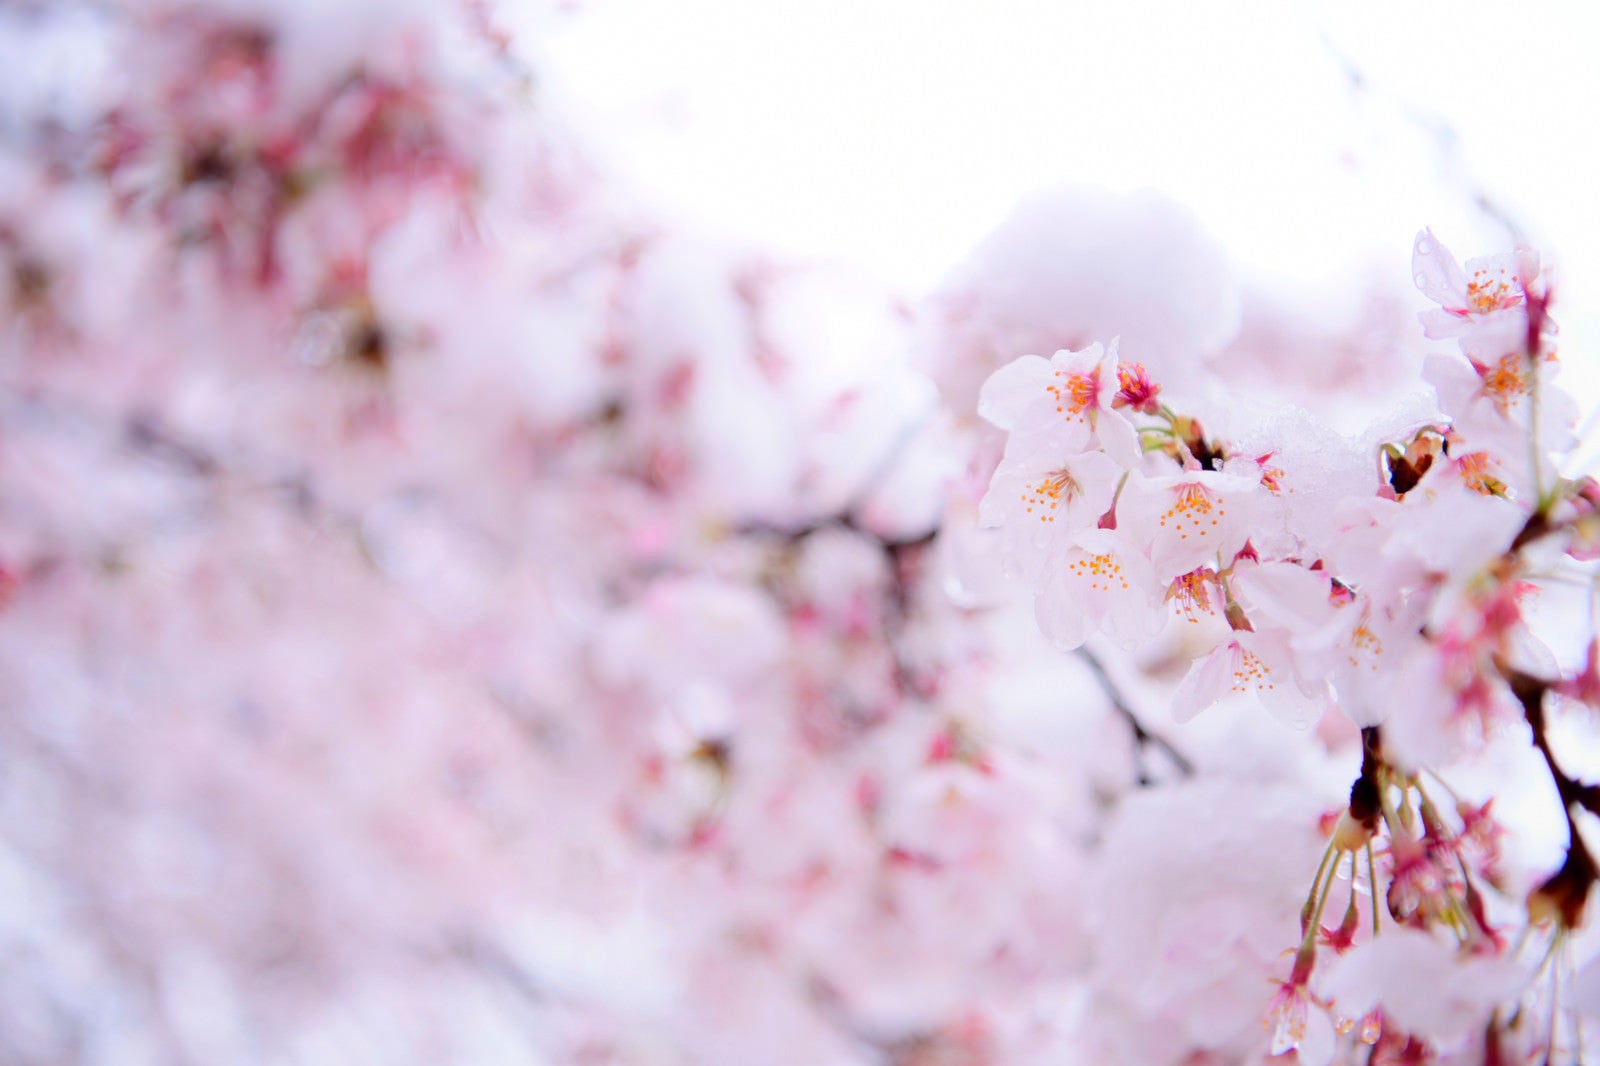 「雪が降った日の淡い色の桜」の写真